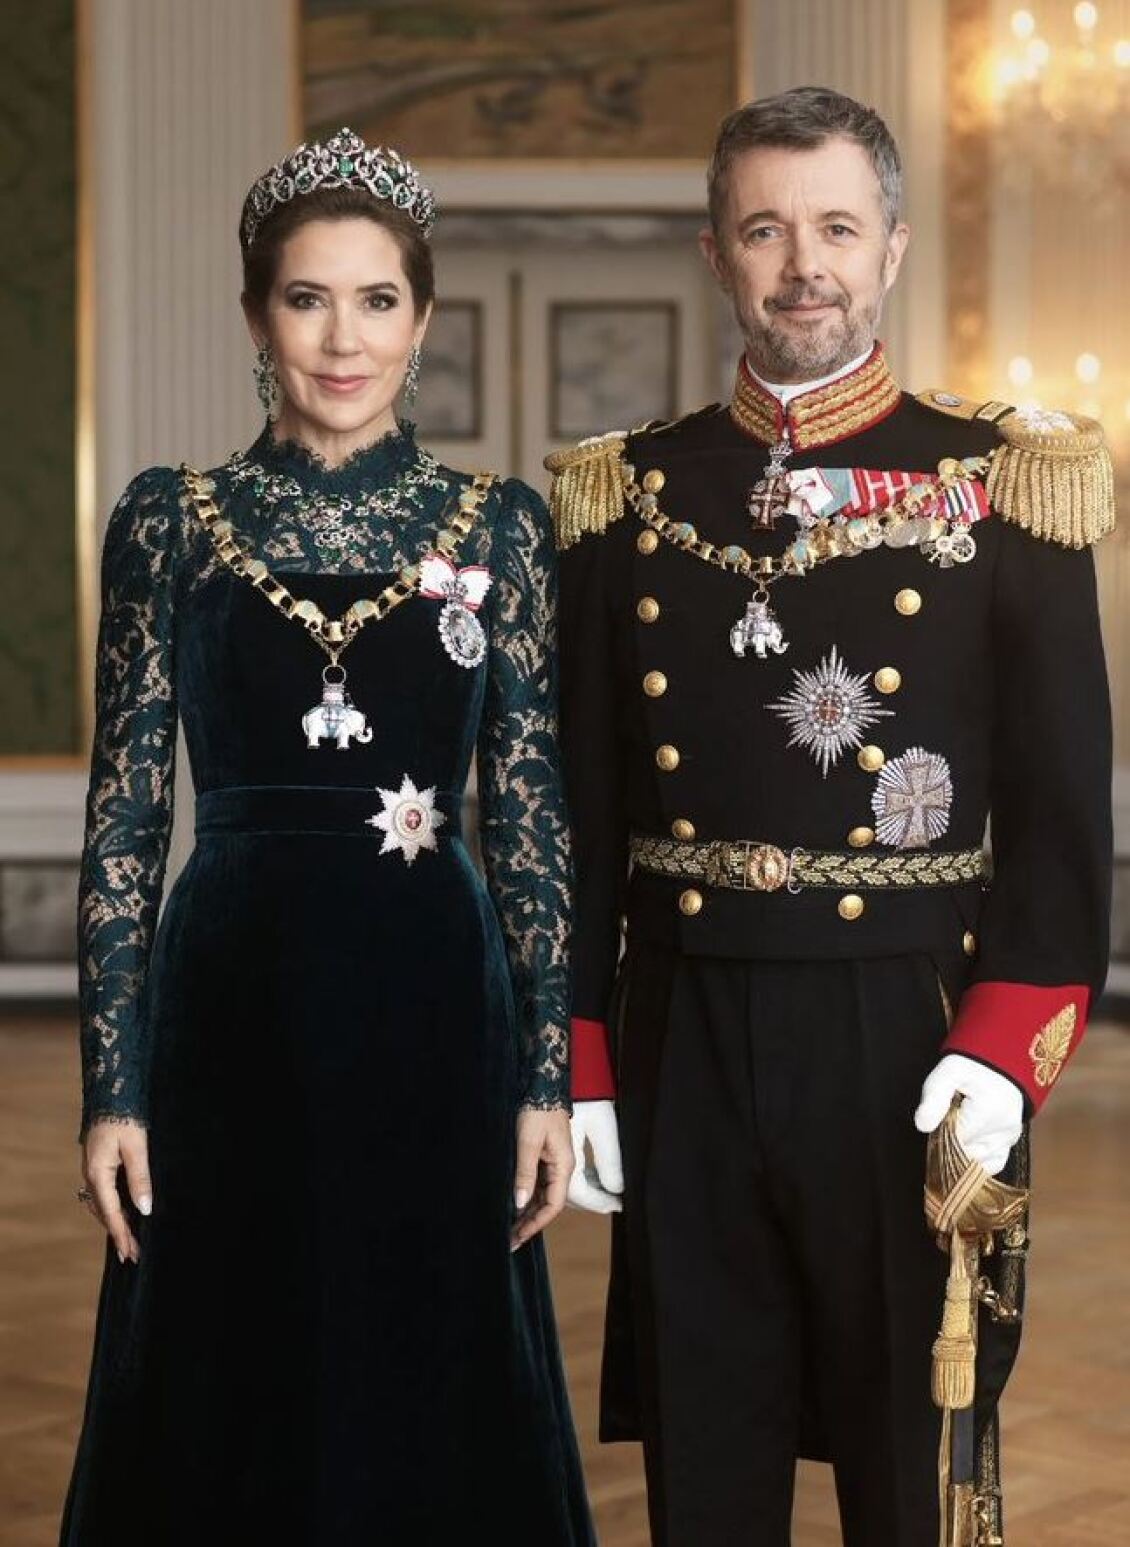 δανία: σάλος στα social media με το πρώτο επίσημο πορτραίτο του βασιλικού ζεύγους - ''είναι προϊόν φωτομοντάζ ή τεχνητής νοημοσύνης'', λένε